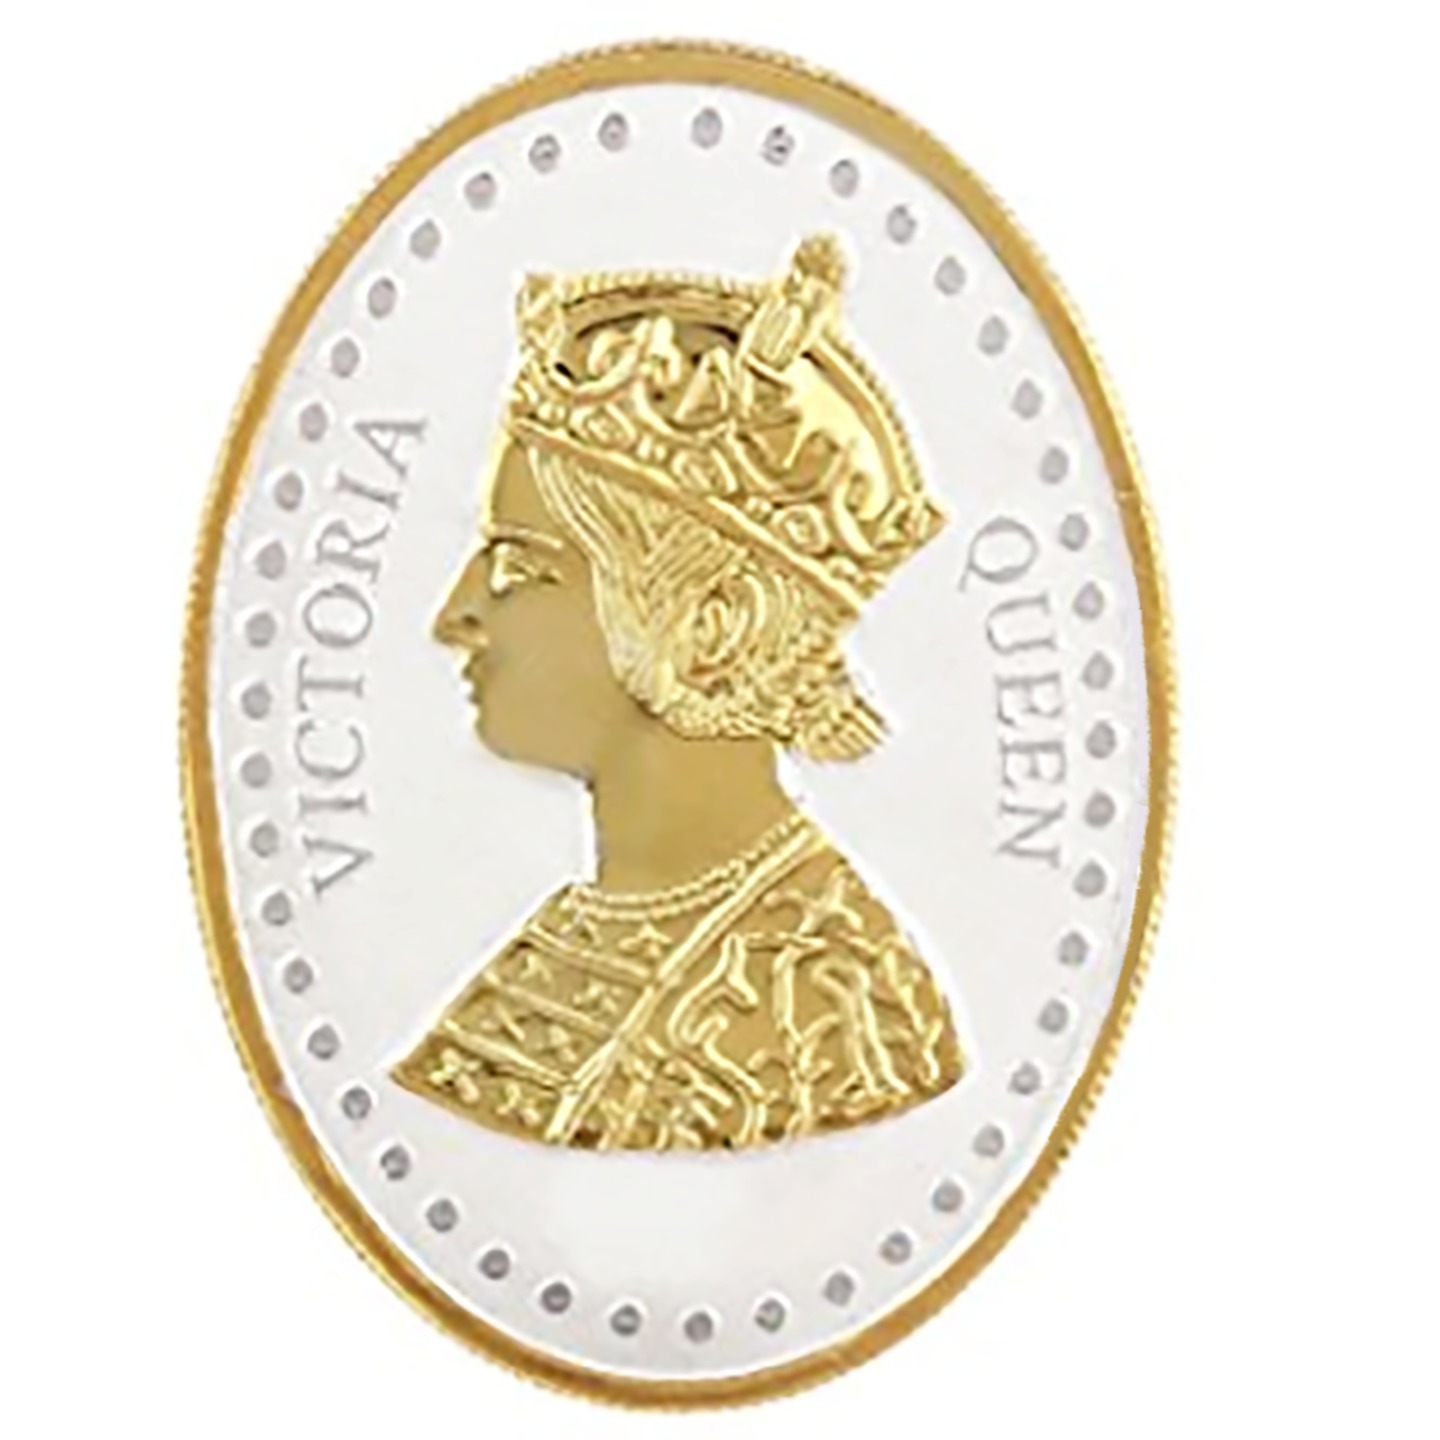 Silver Coin Queen Victoria 24 Kt Gold Plated 50 Gm 999 BIS Hallmarked